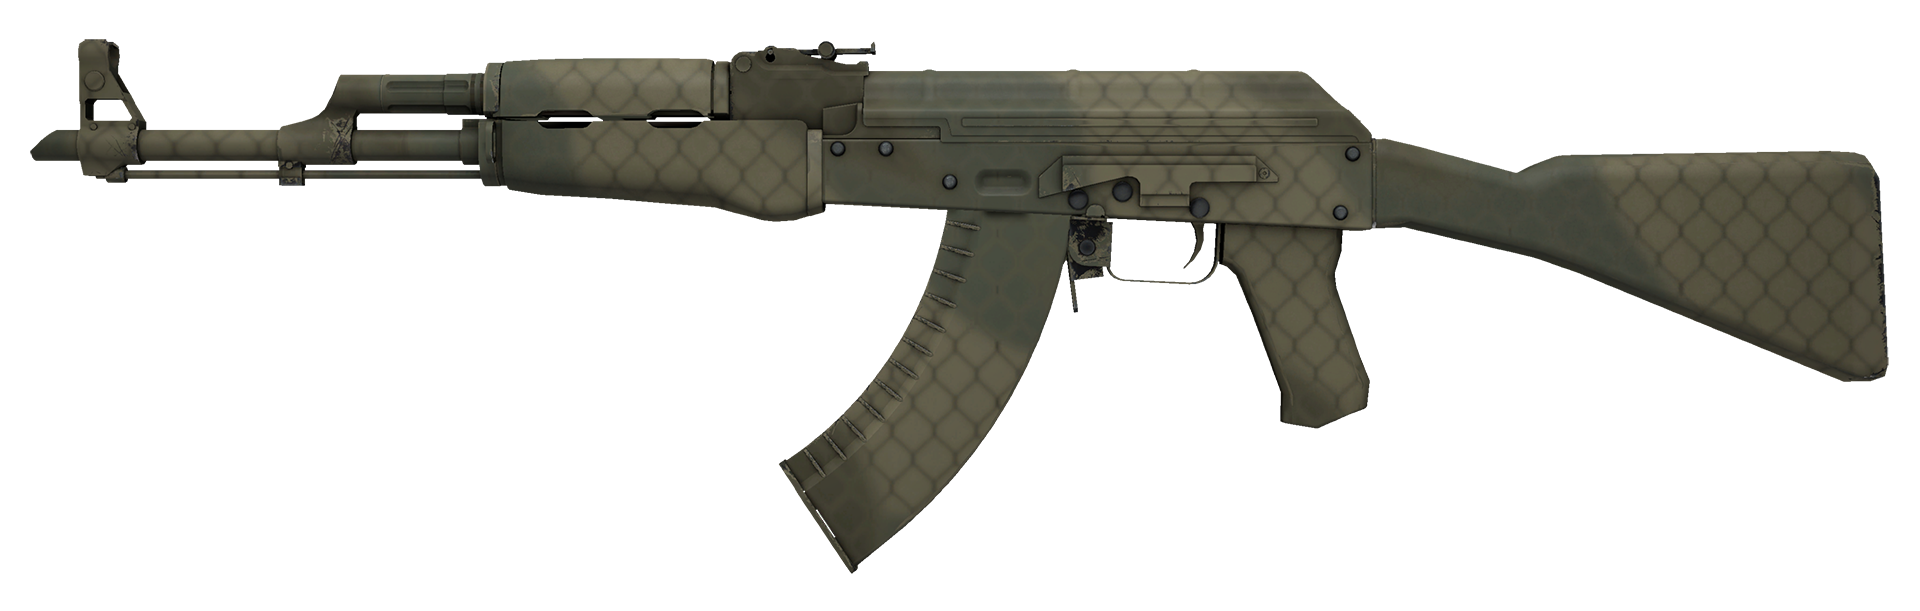 AK-47 Safari Mesh Large Rendering